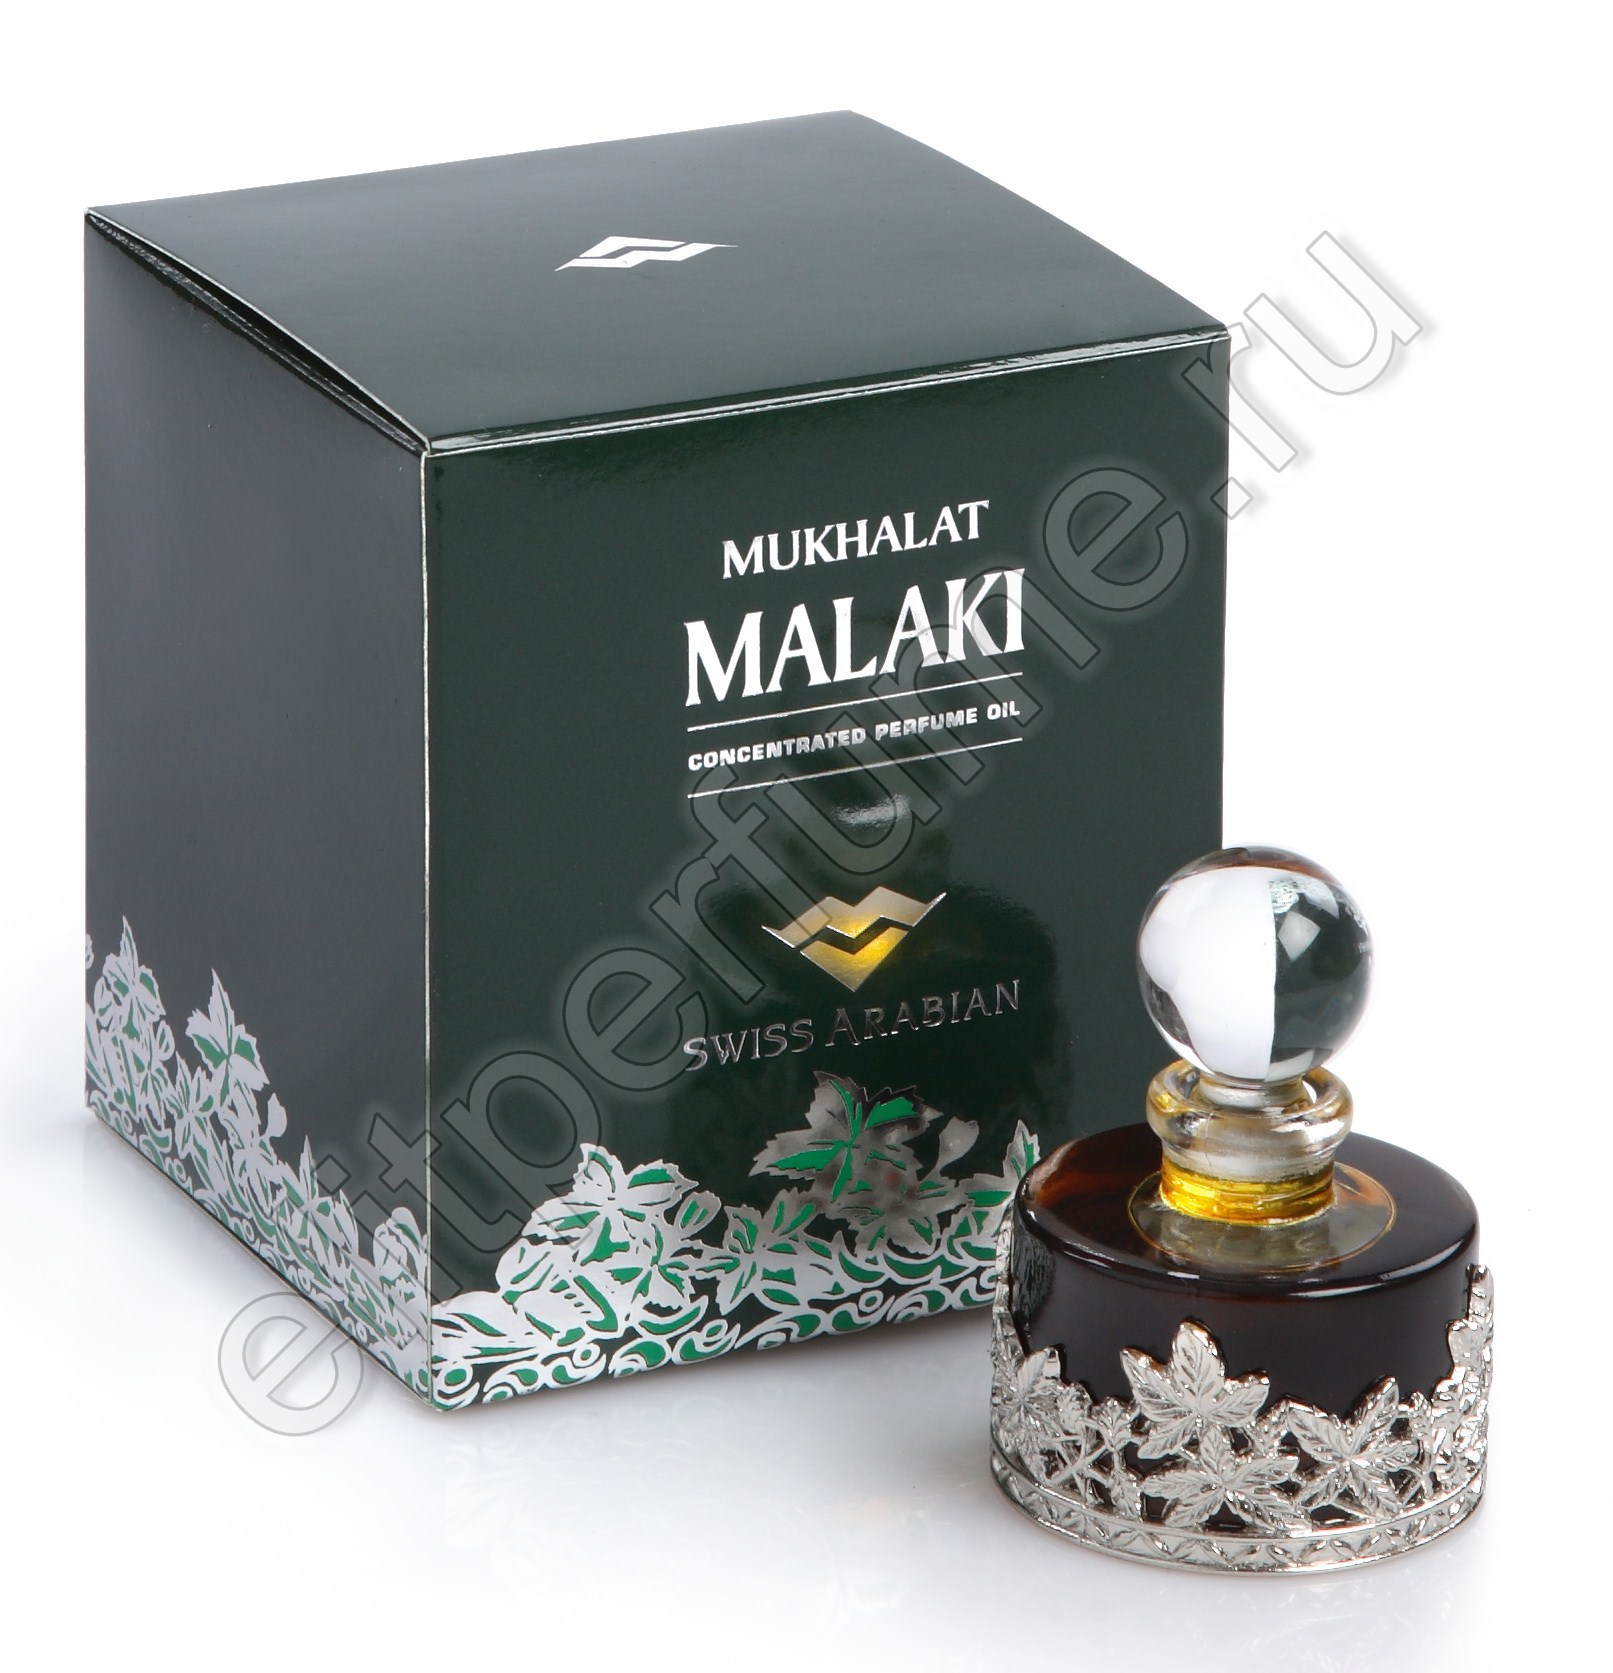 Пробники для арабских духов Мухаллат Малаки Mukhalat Malaki 1 мл арабские масляные духи от Свисс Арабиан Swiss Arabian